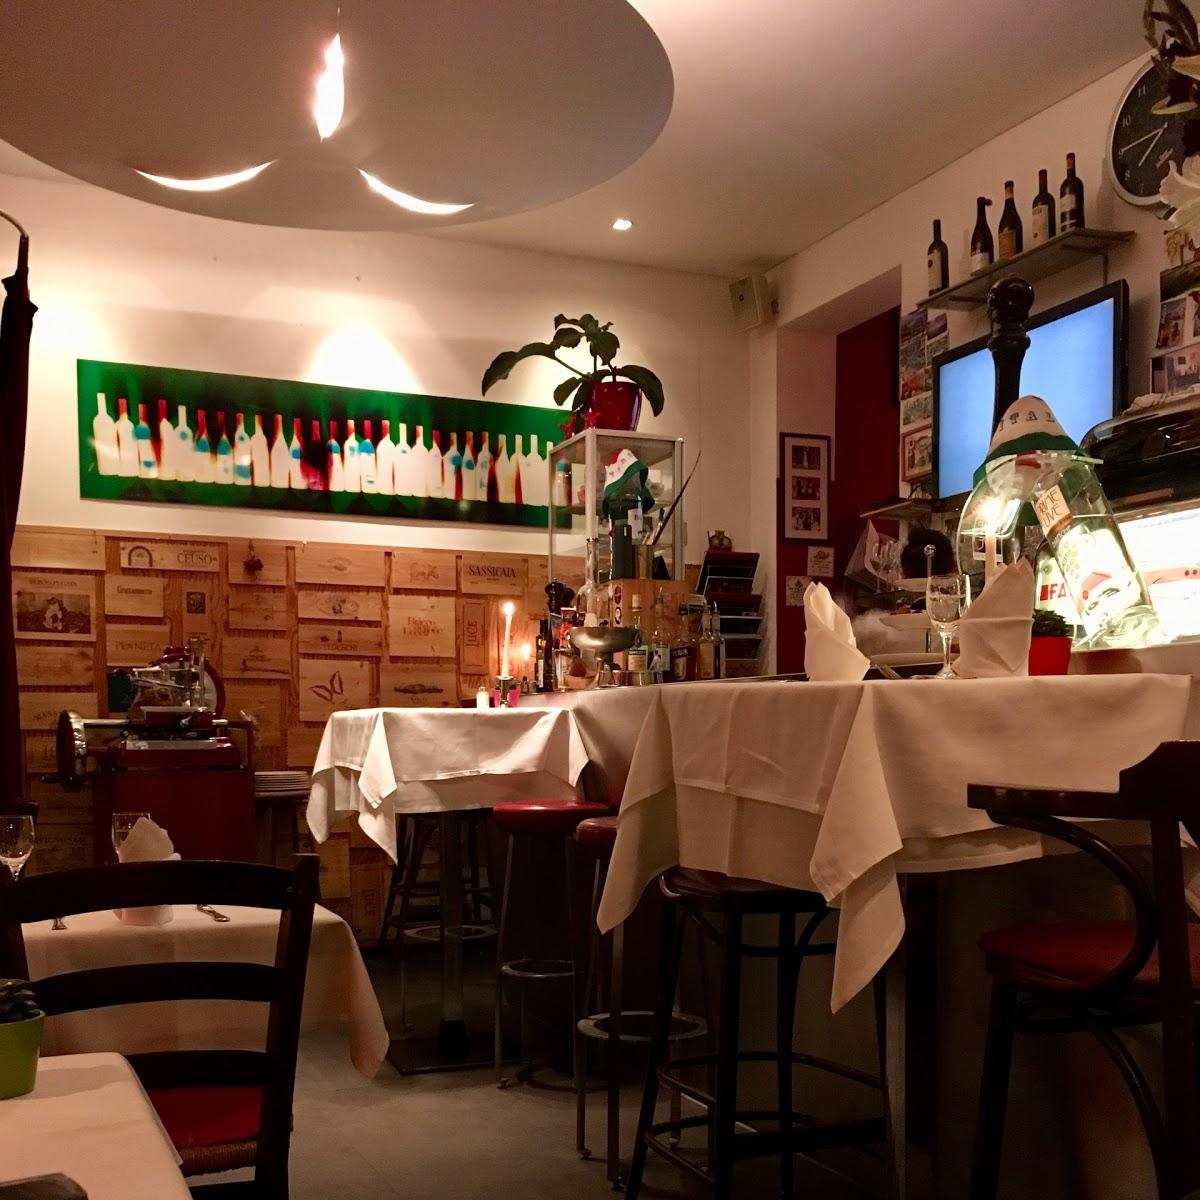 Restaurant "Bar dell